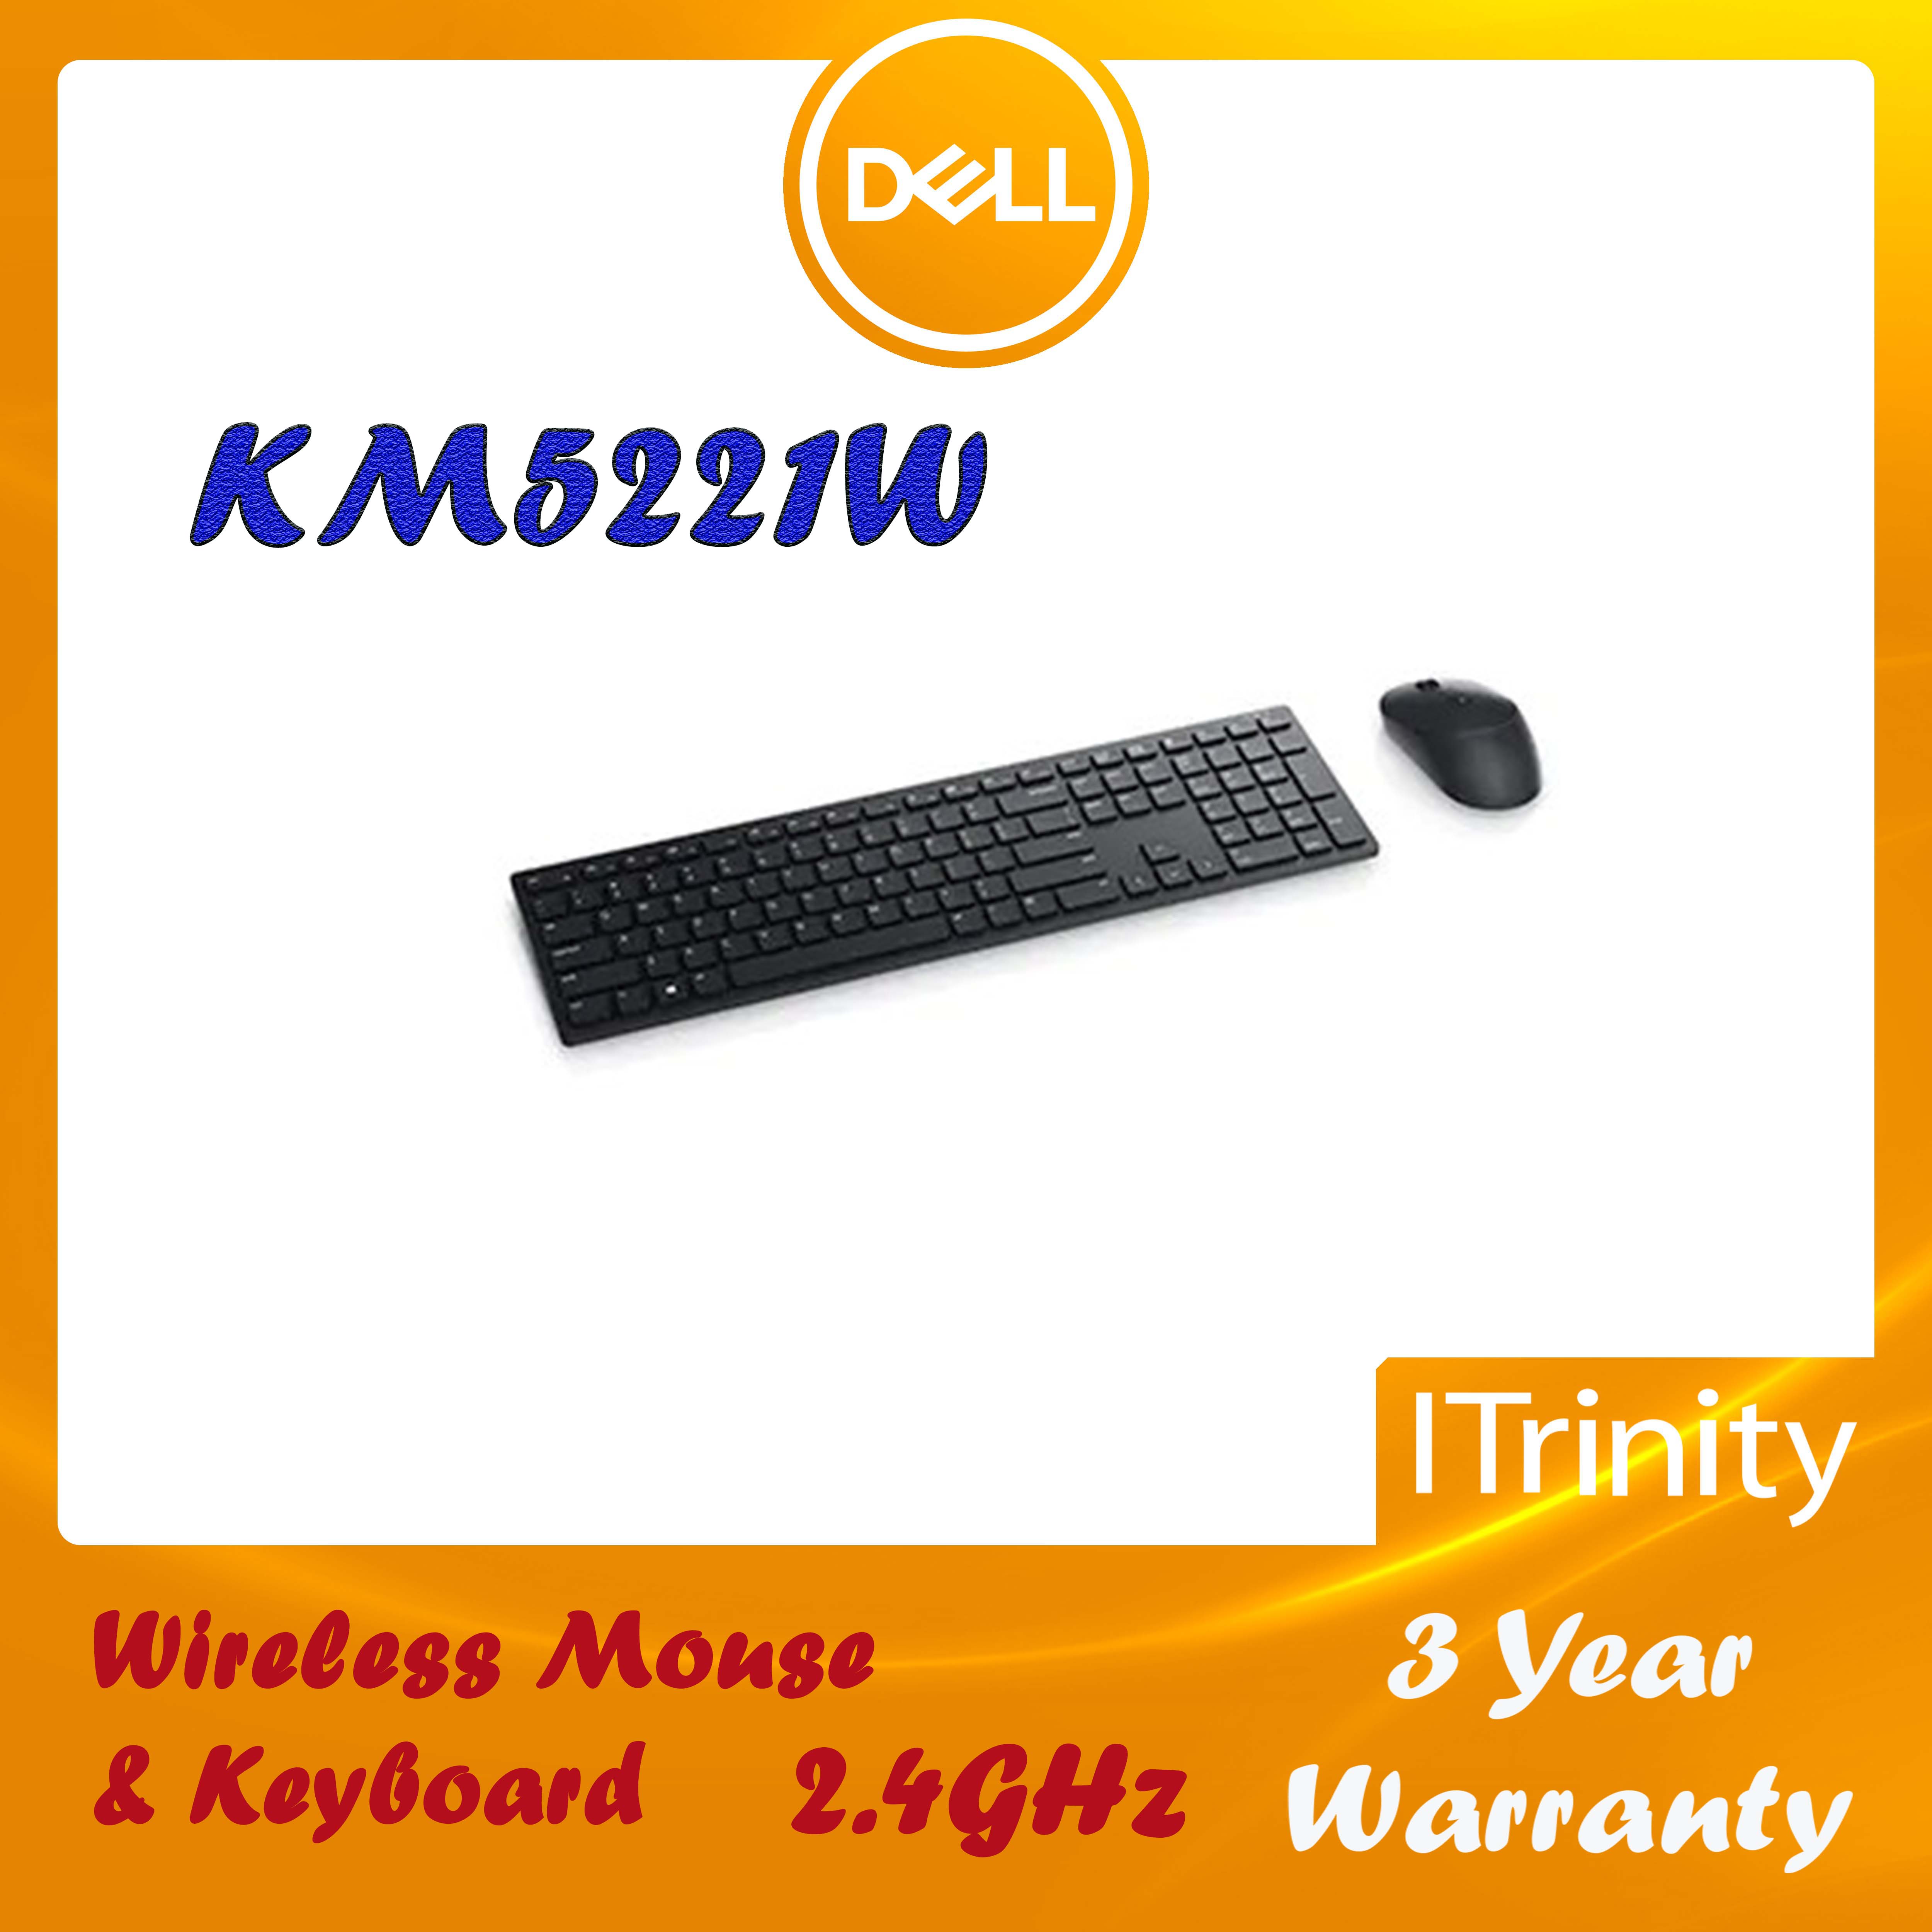 Dell Pro Wireless Keyboard and Mouse – KM5221W เซ็ทเม้าส์ & คีย์บอร์ดไร้สาย 2.4GHz ประกัน 3 ปี